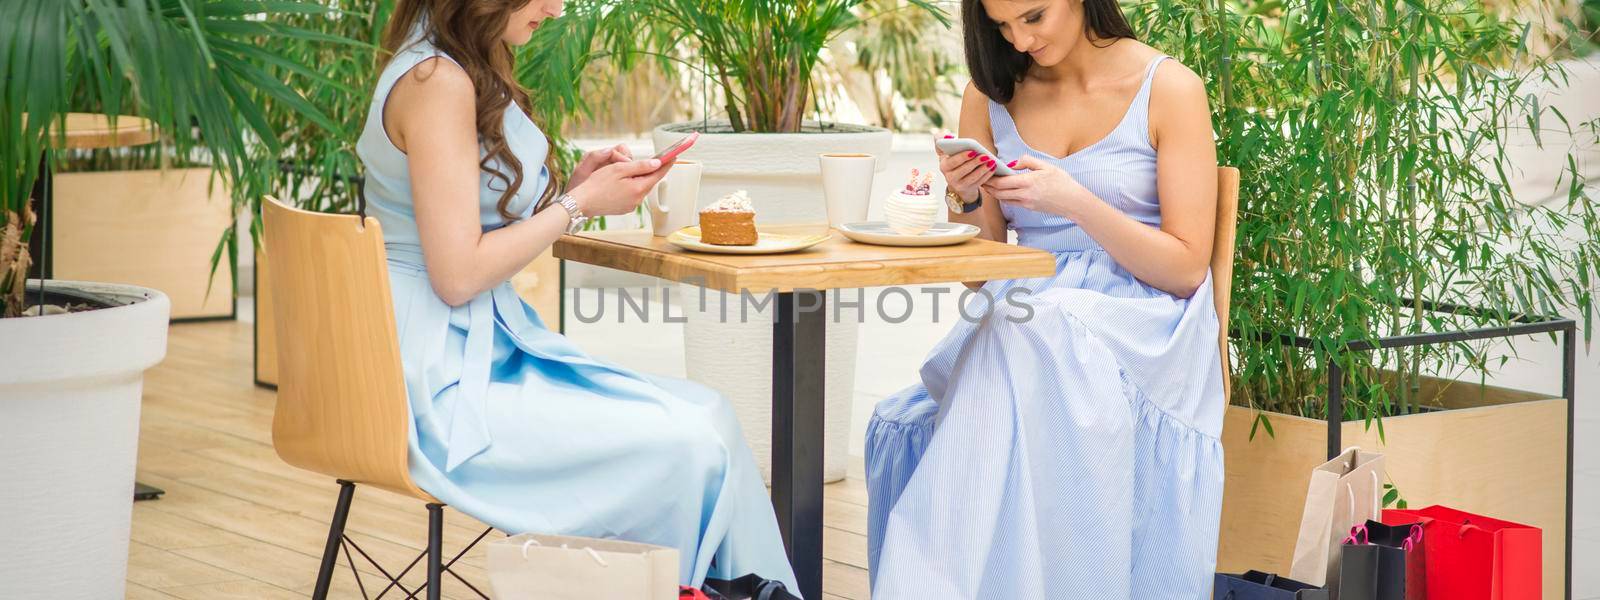 Two women looking at smartphones by okskukuruza